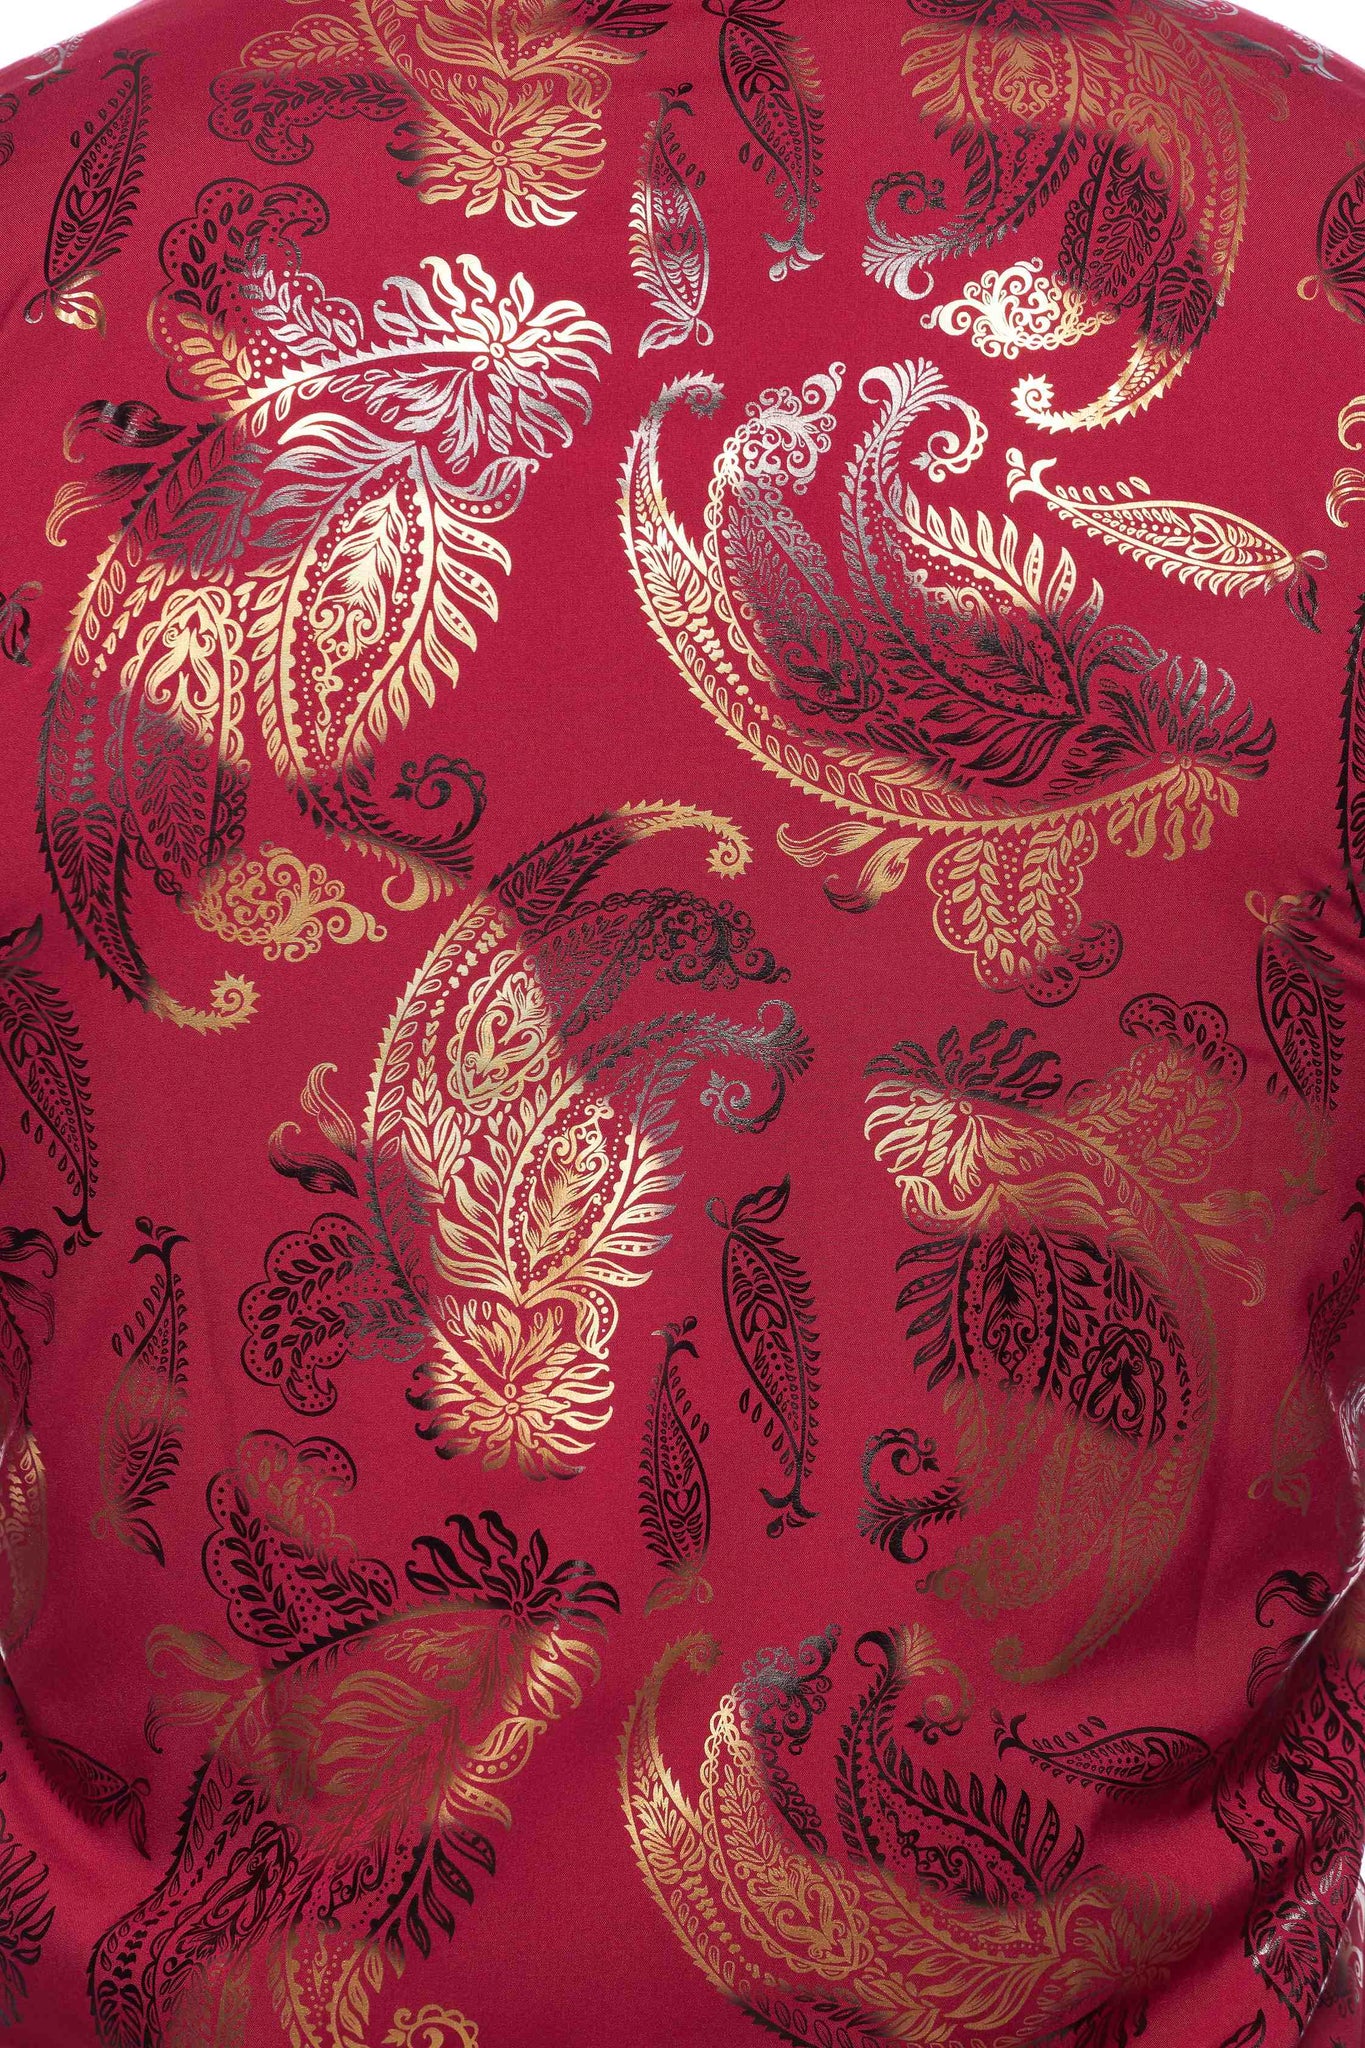 Mens Luxury Brand Printed Silk Like Shirts-HLS2002L-526